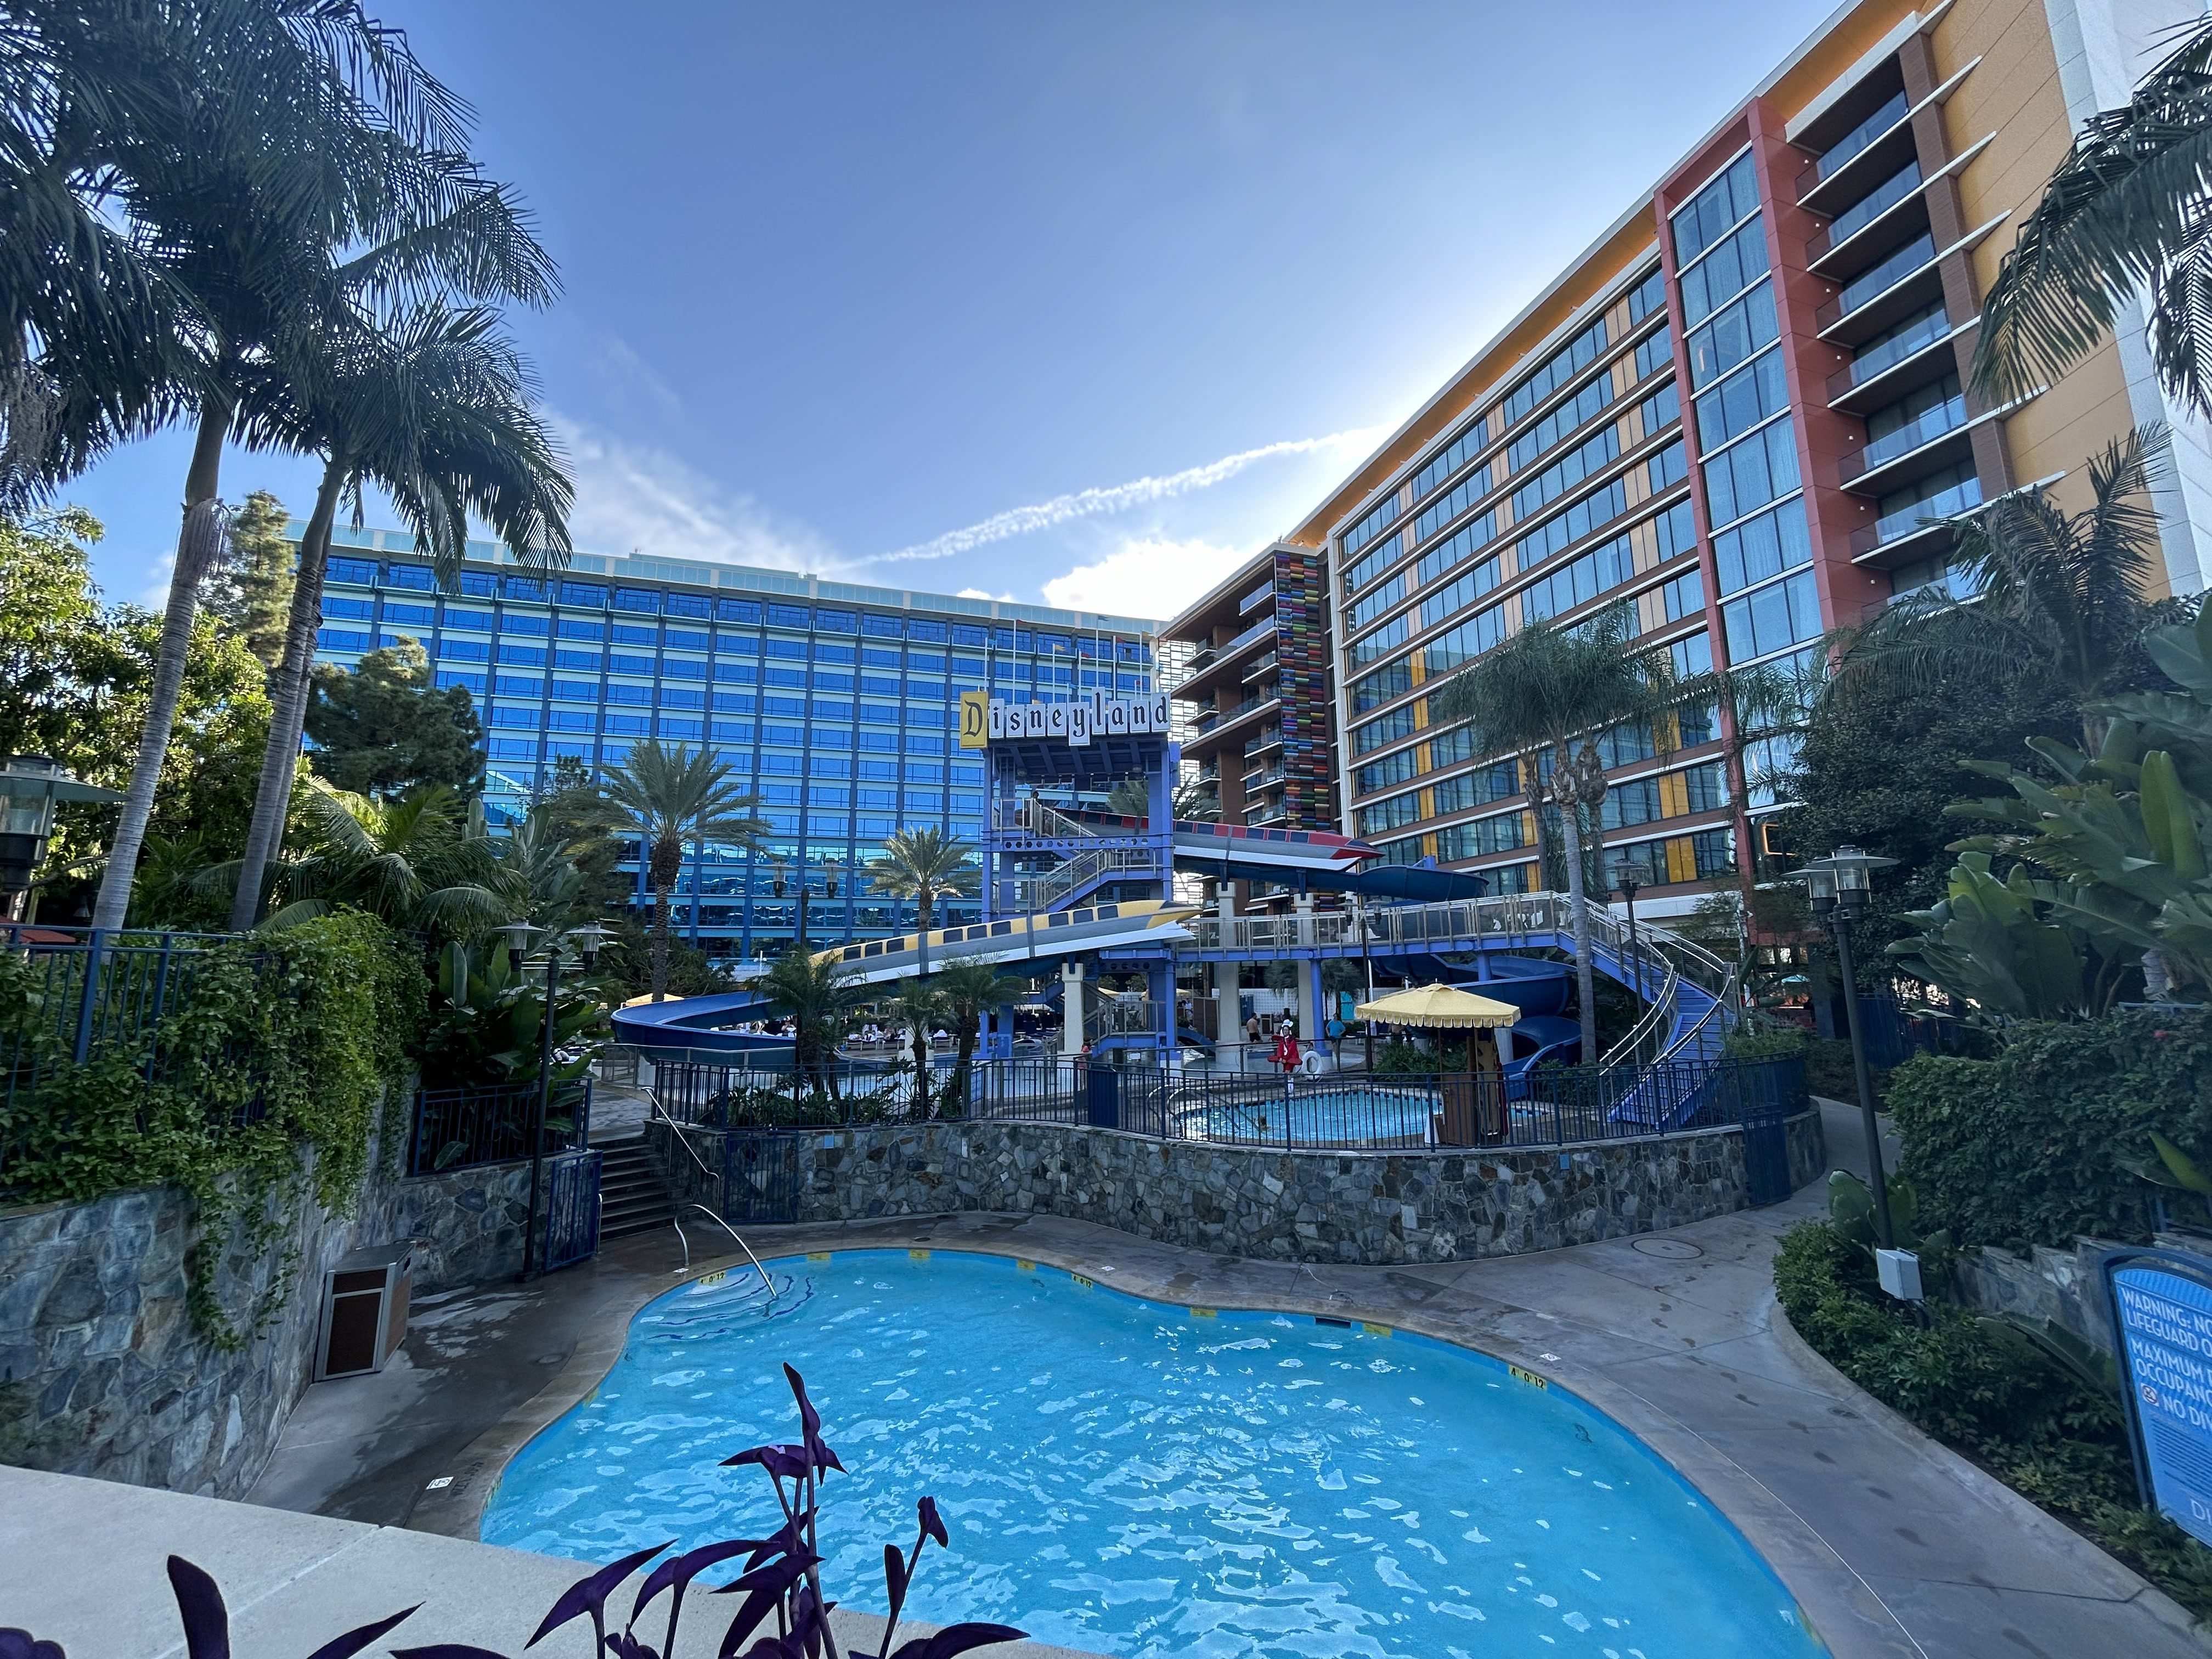 Foto não editada da área da piscina do Disneyland Hotel.